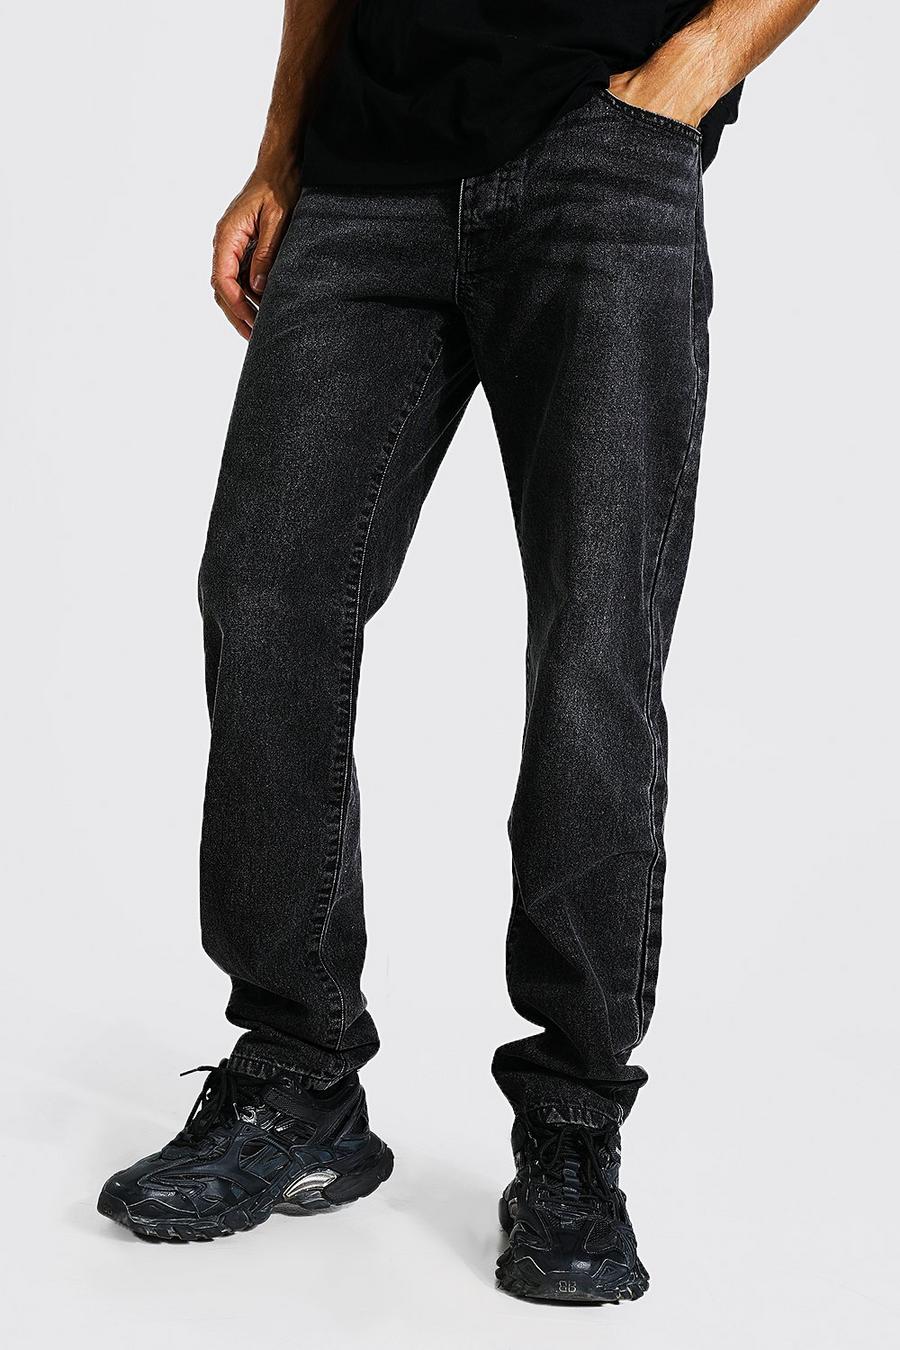 פחם grigio ג'ינס עם כותנה ממוחזרת בגזרה משוחררת, לגברים גבוהים